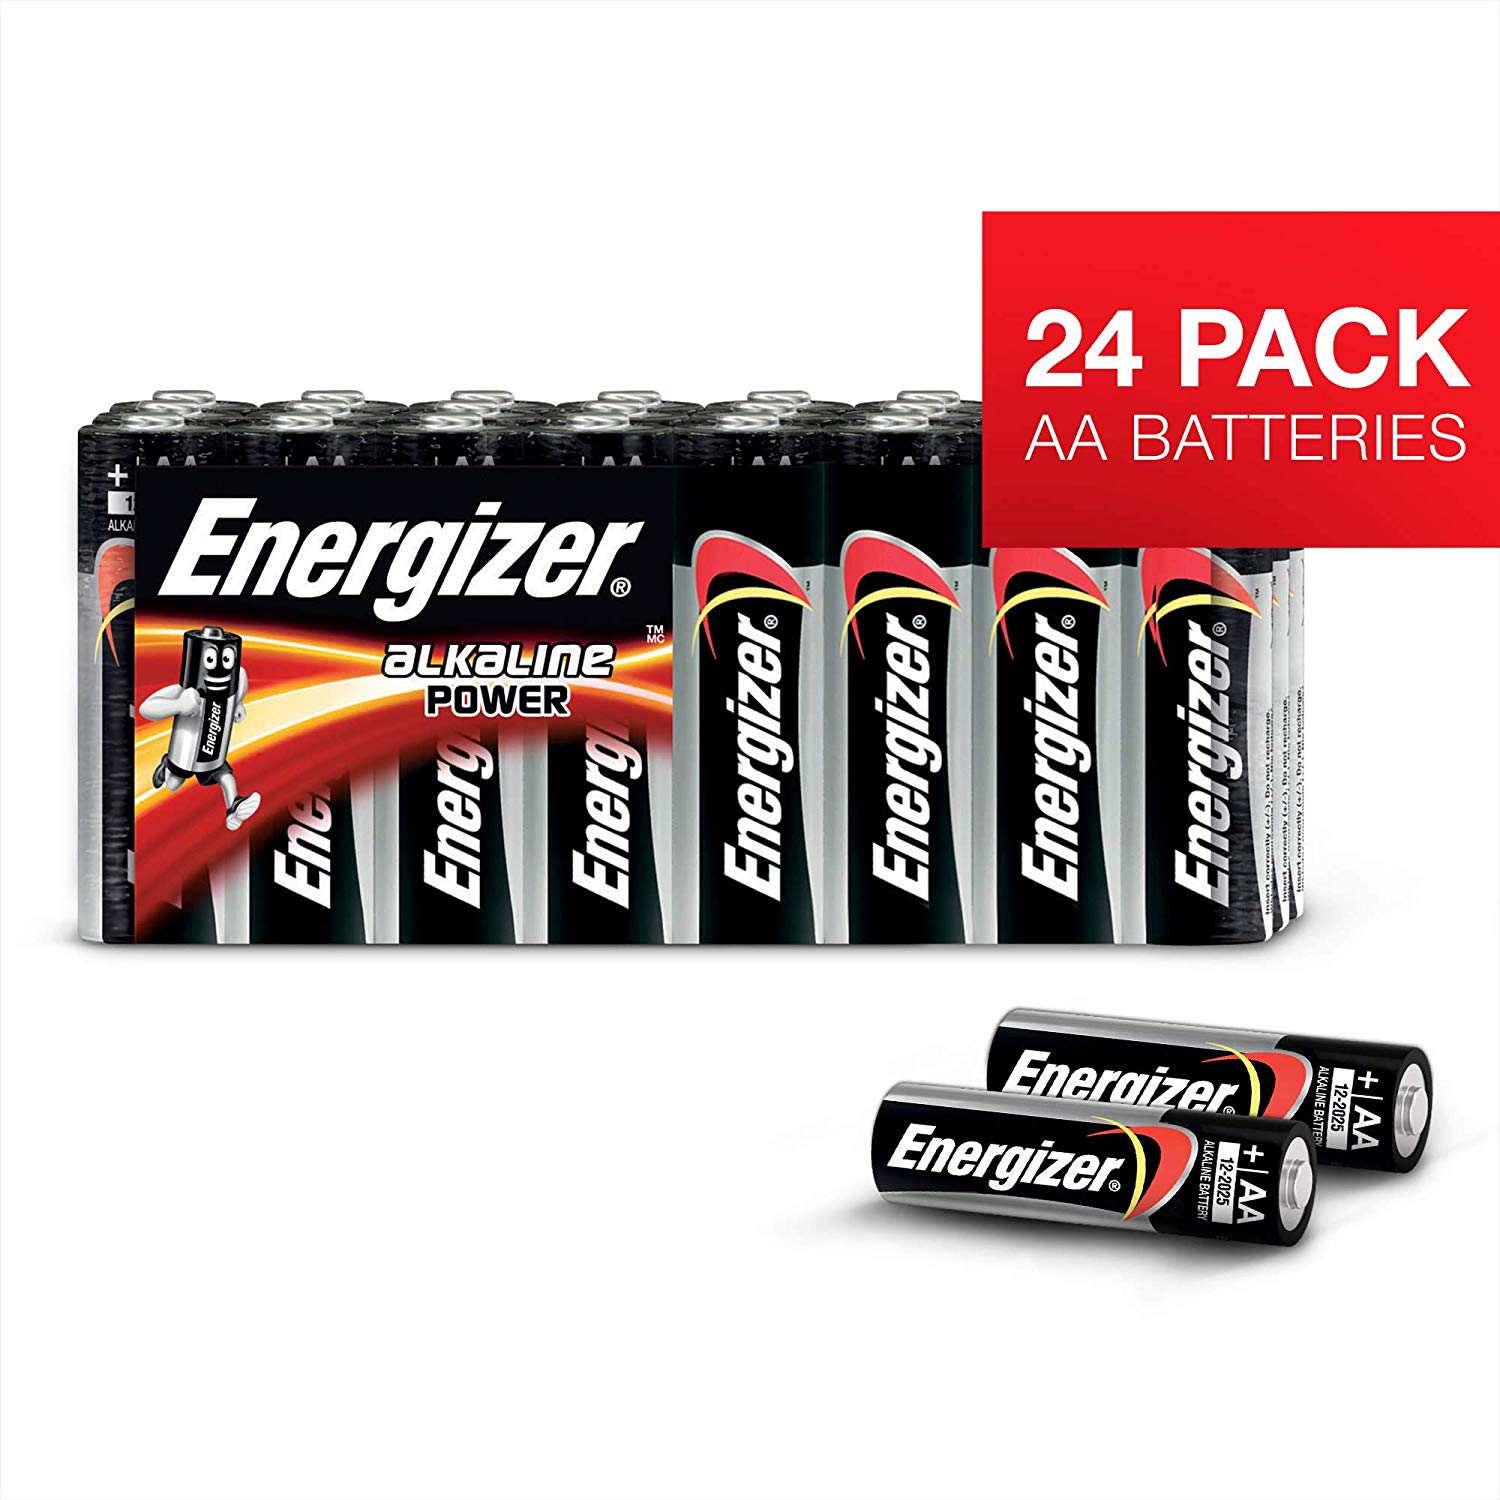 Pack de 24 pilas Energizer Classic AA solo 14,1€